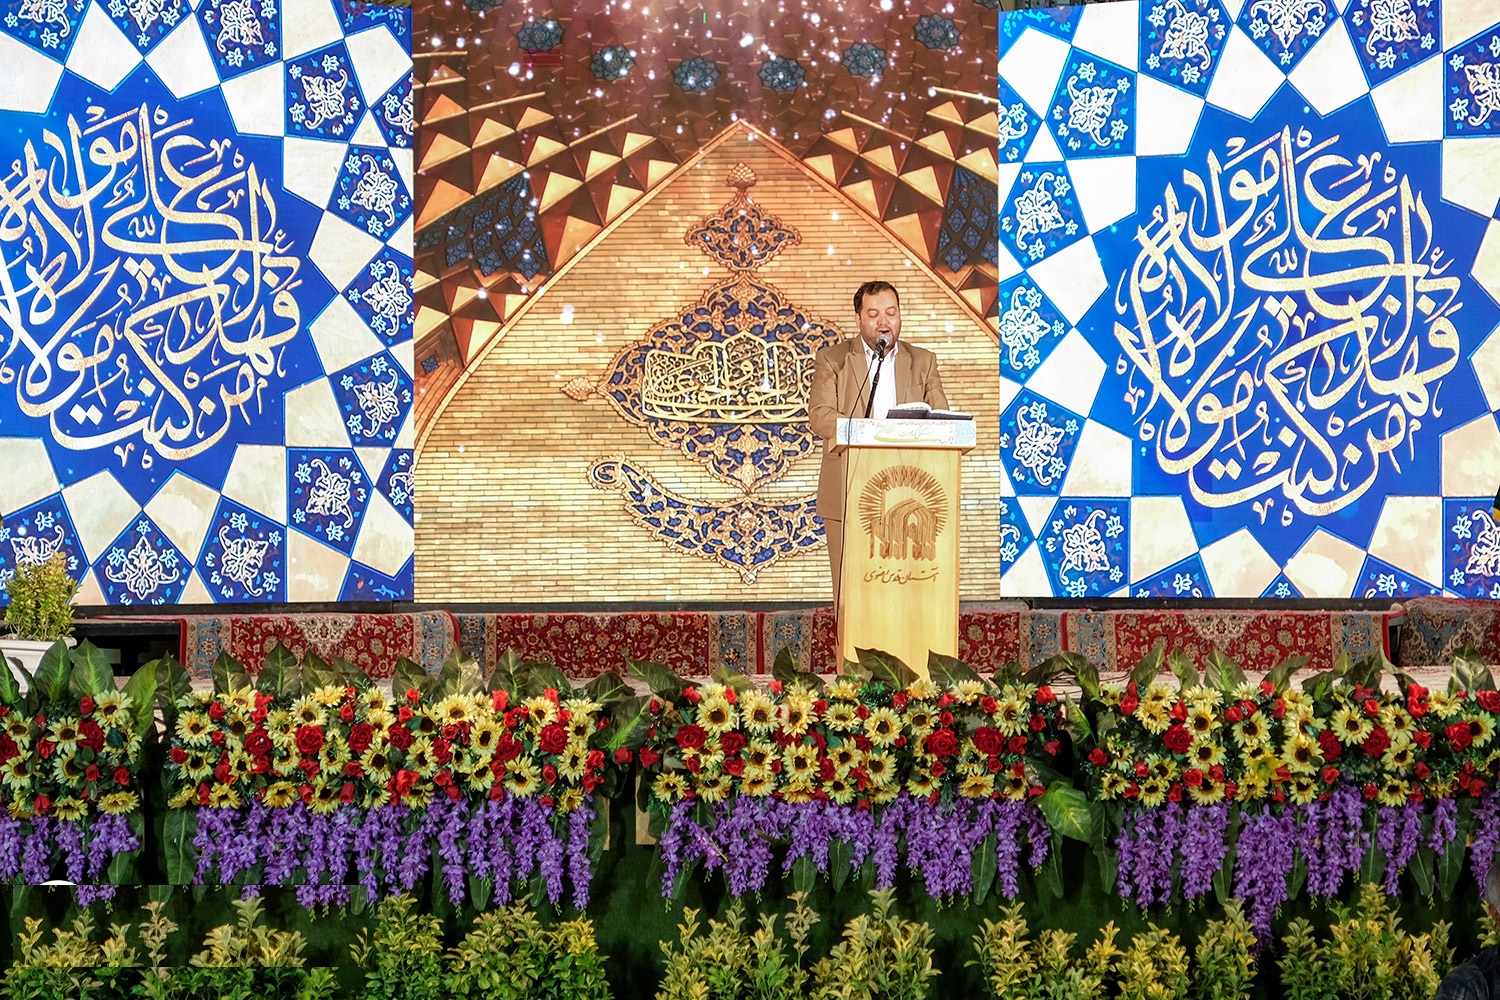 بالصور: احتفالات عيد ولاية قائد الغر المحجلين في رحاب مرقد الإمام الرضا (ع)